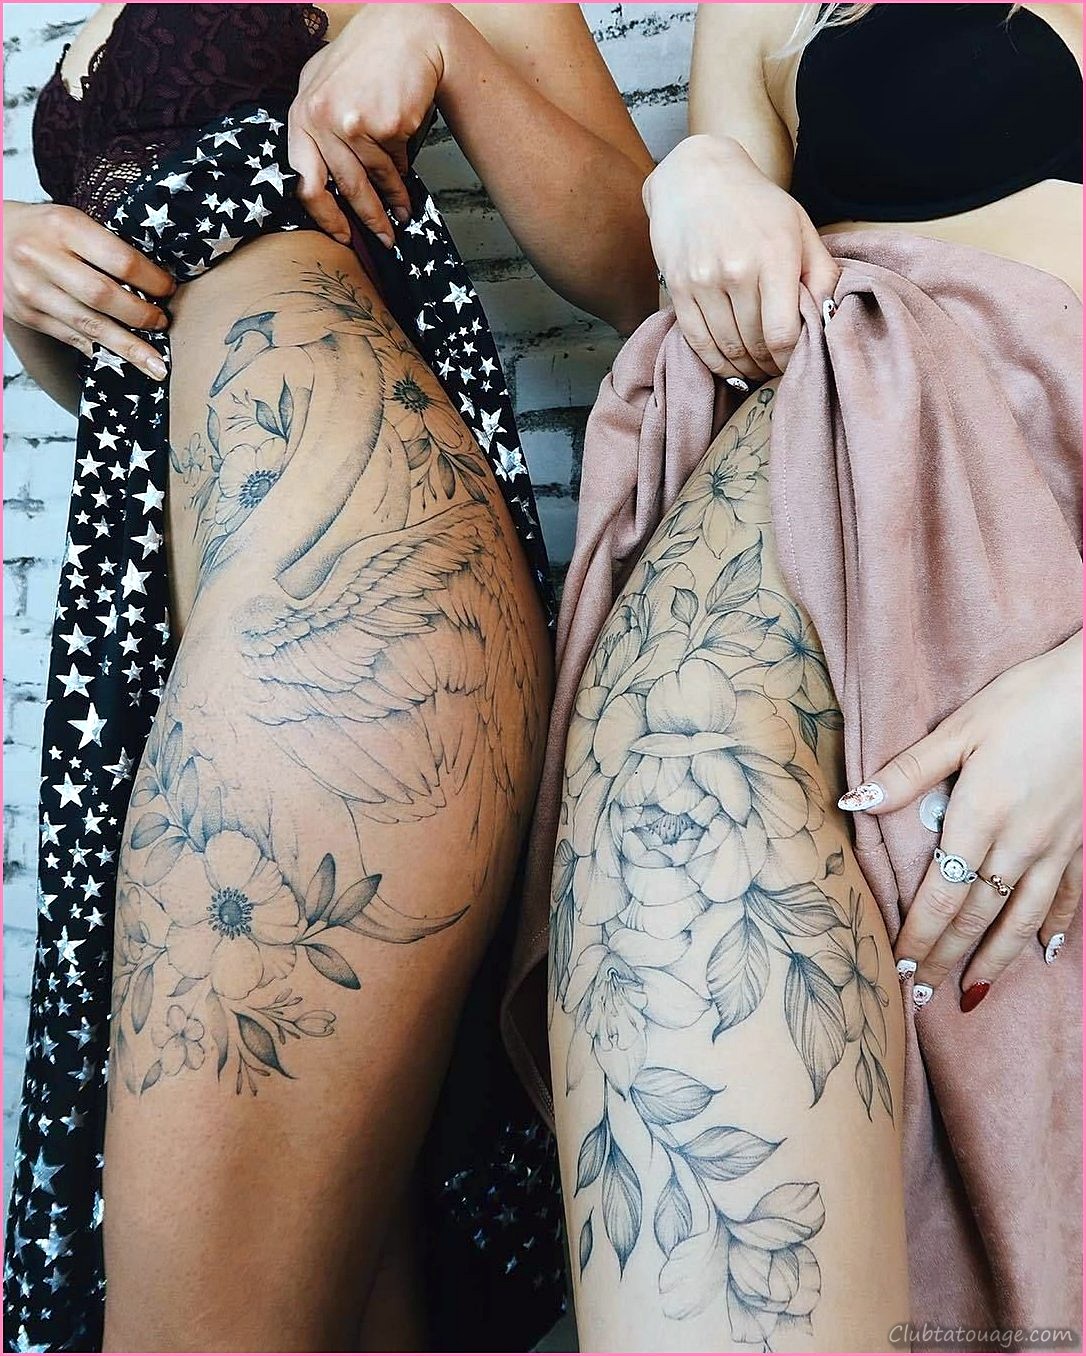 Dessins pour femmes de tatouages femmes